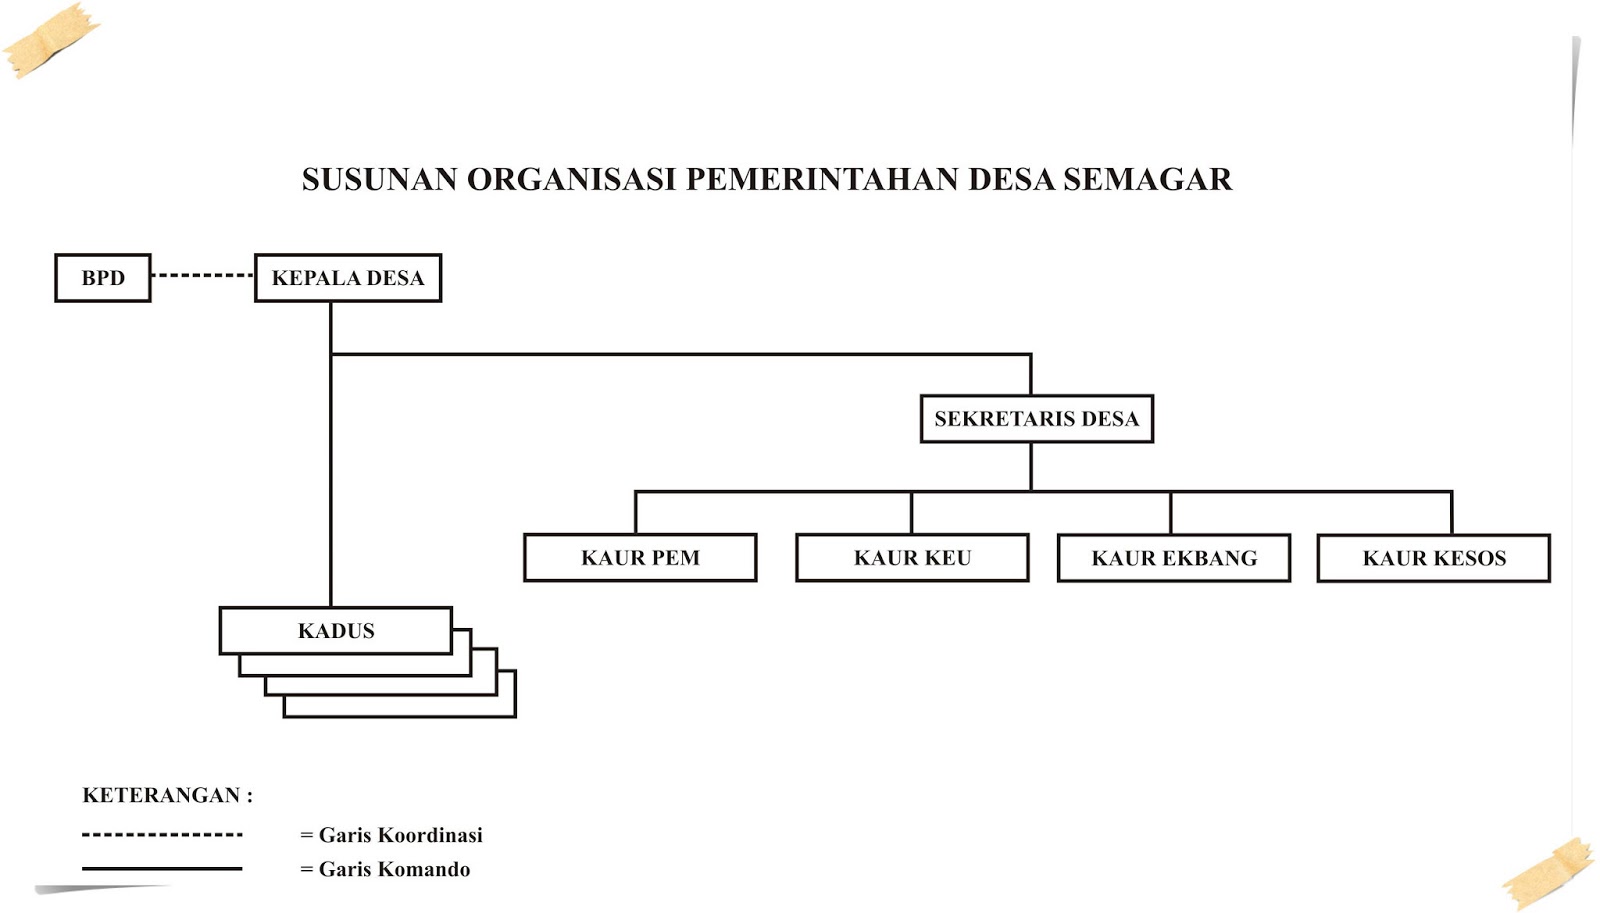 DesaSemagar.com: Struktur Organisasi Pemerintah Desa Semagar